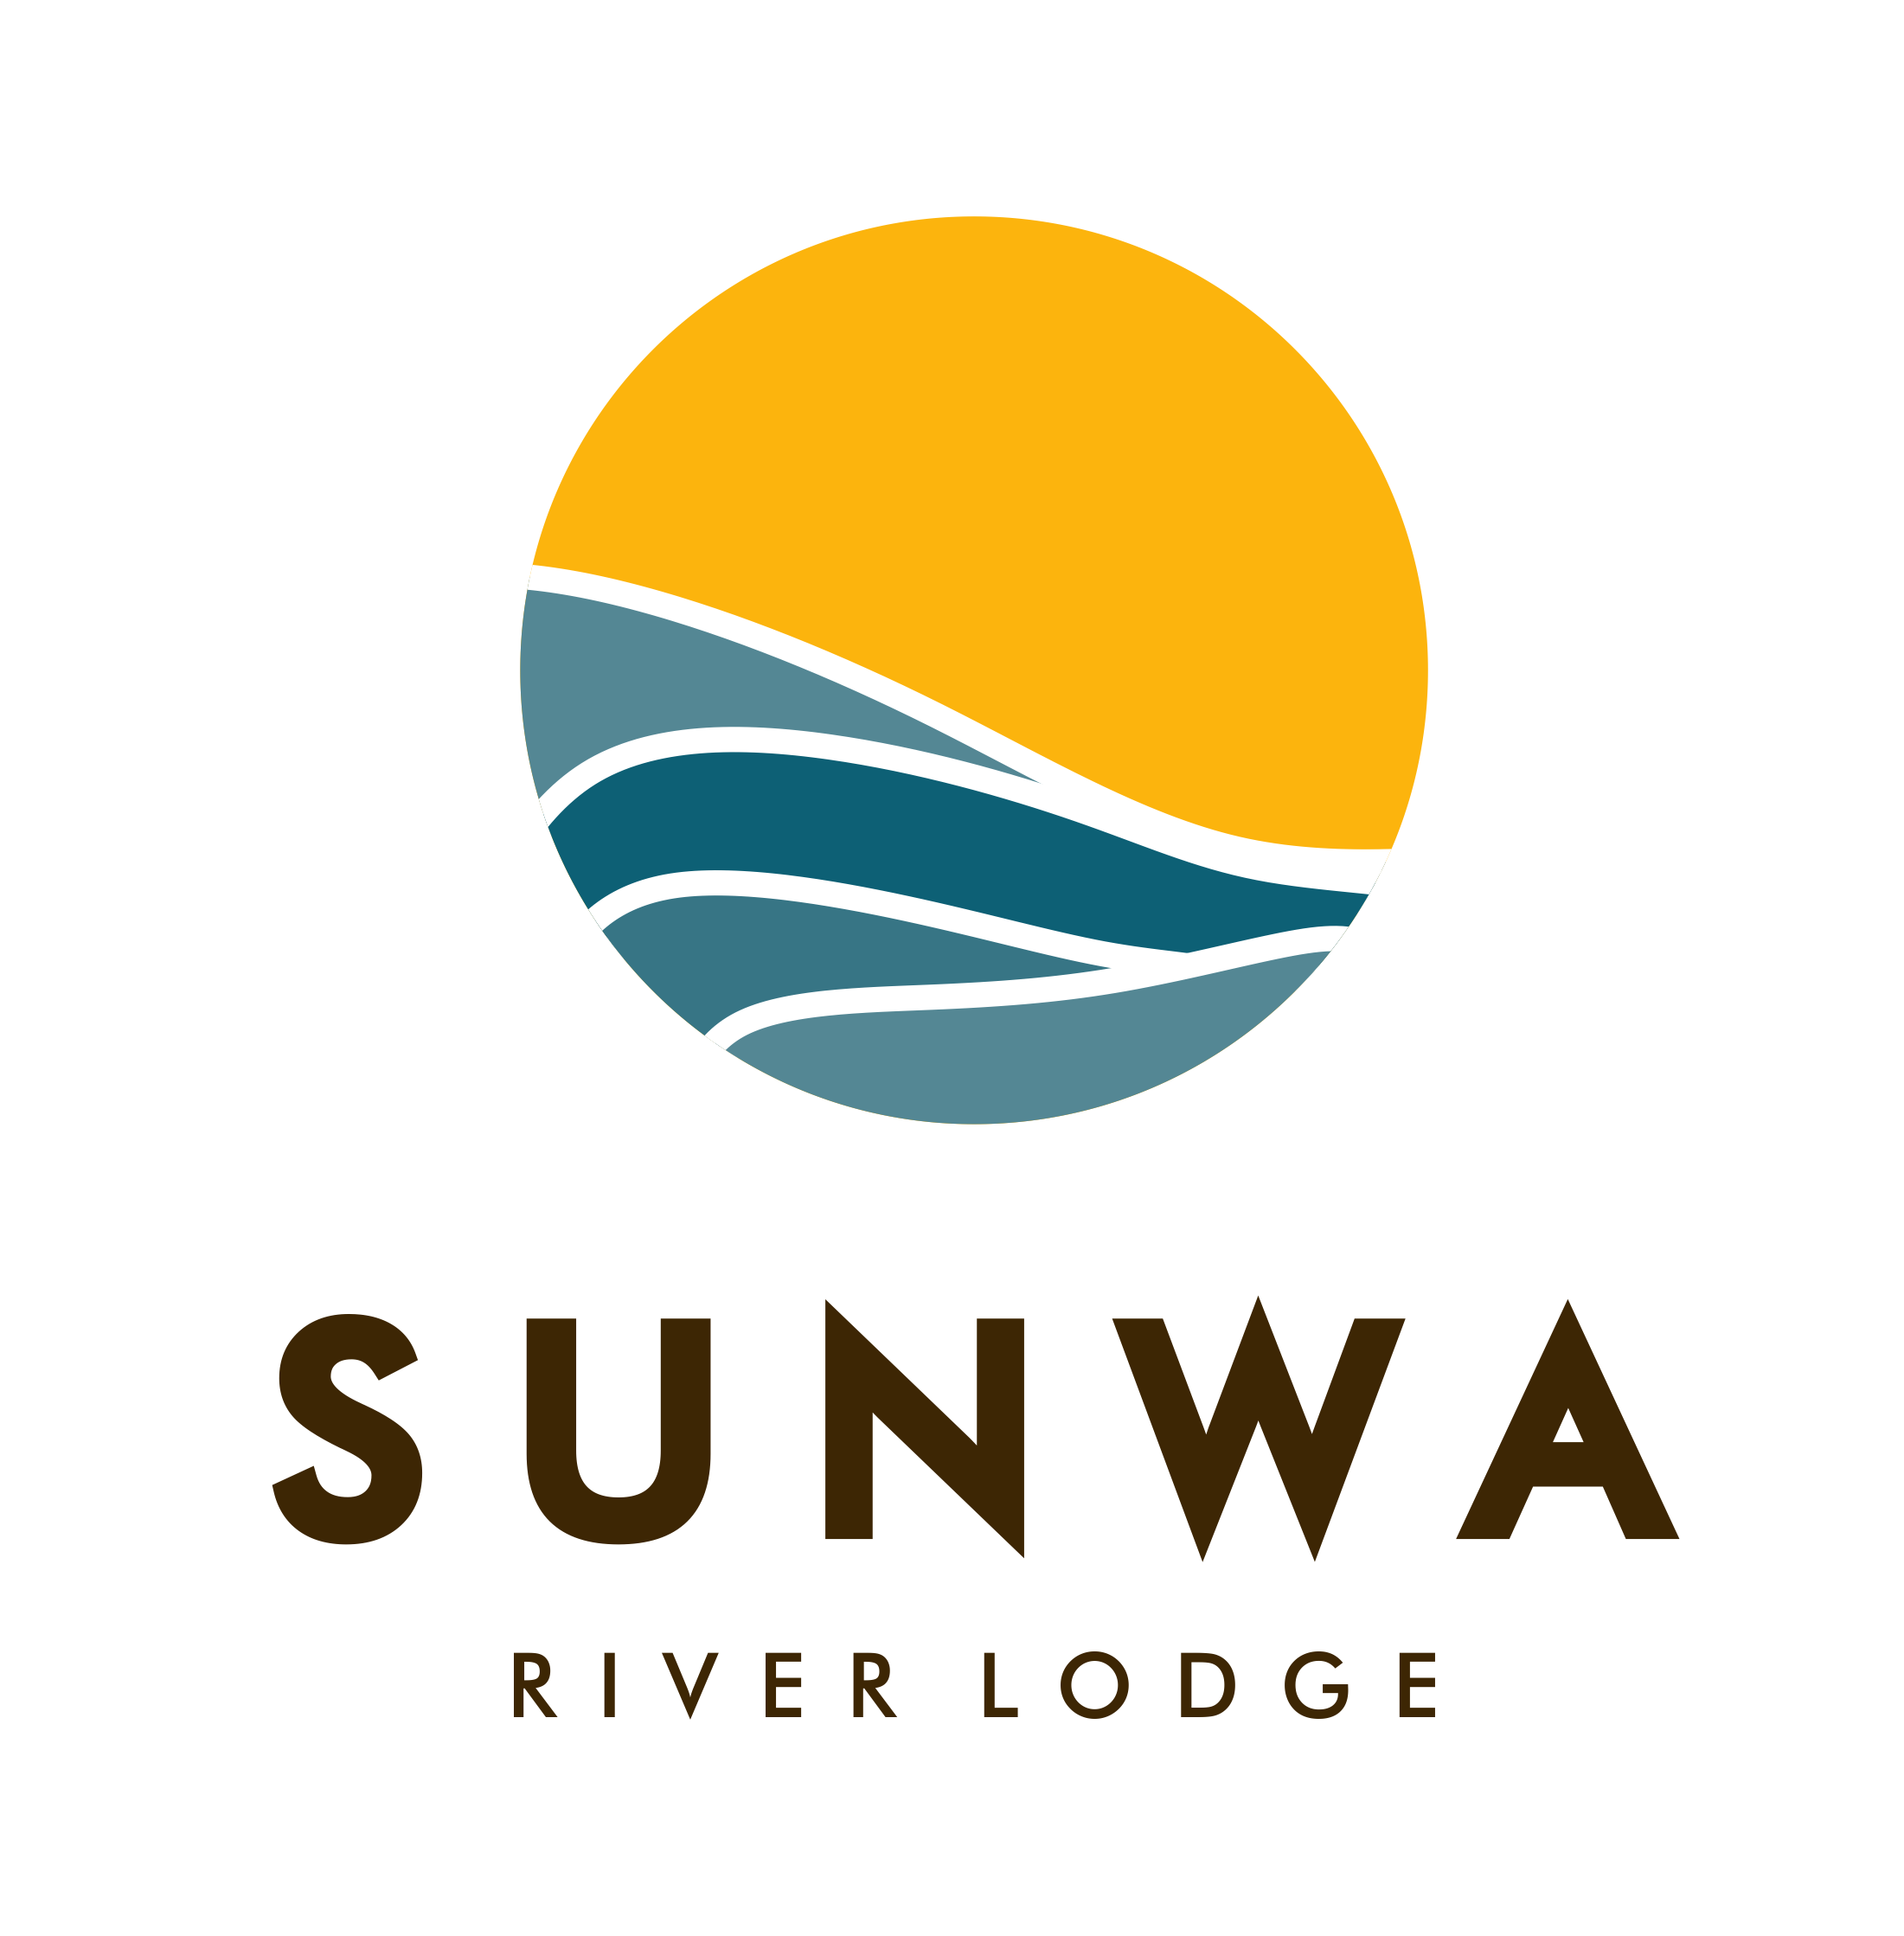 Sunwa River Lodge